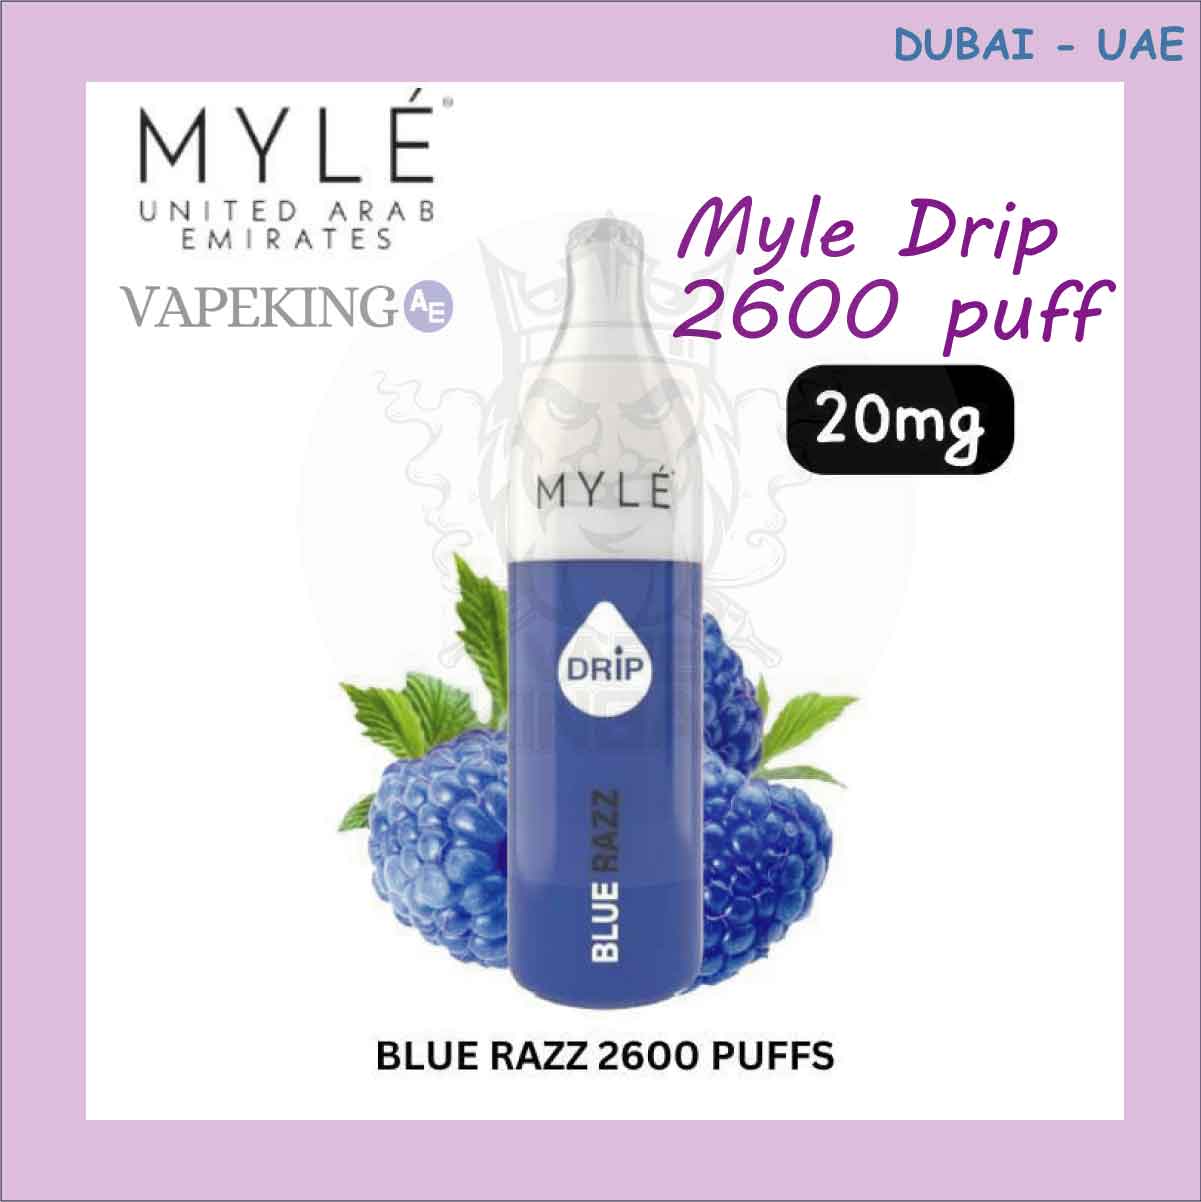 Myle Drip 2600 puffs New